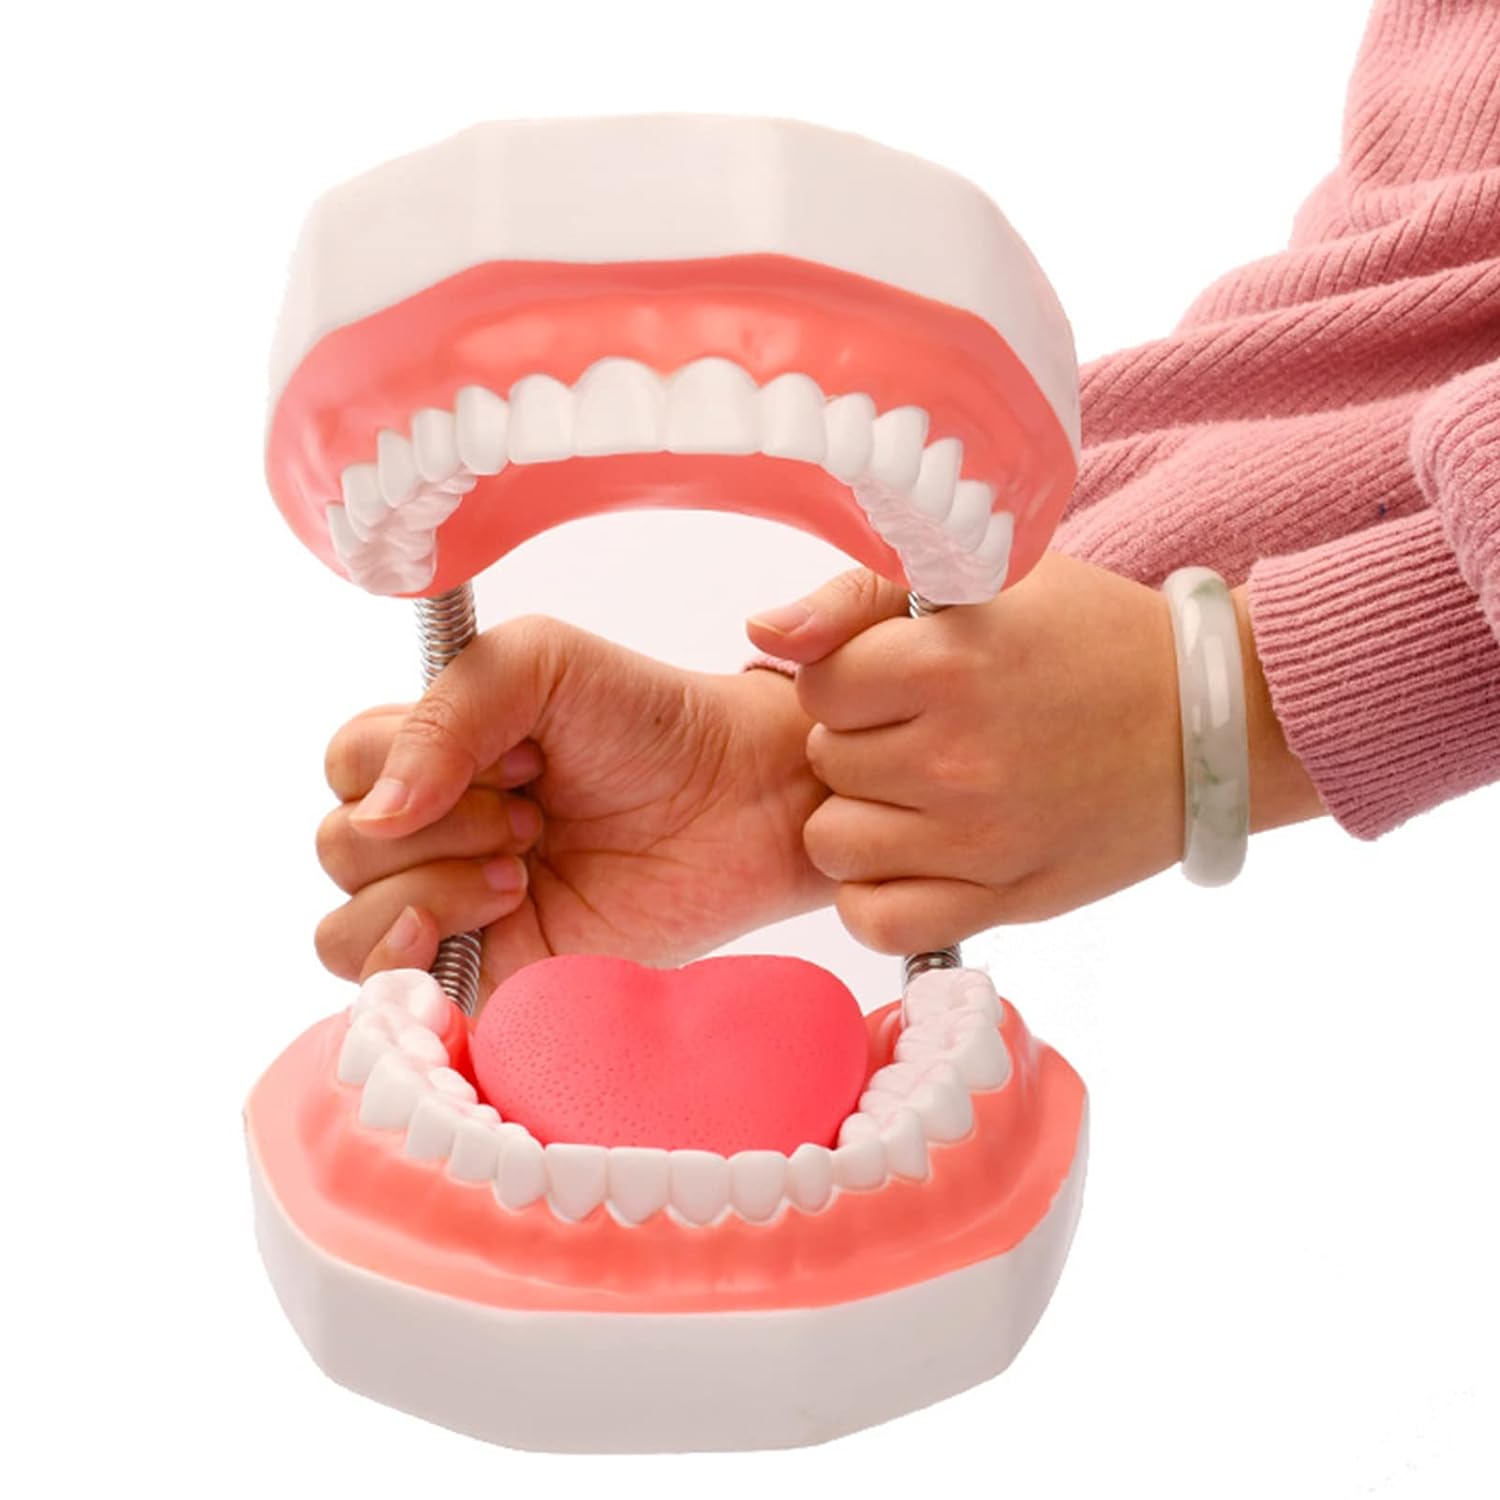 楽天PASIROショップ6倍の倍率歯科モデル 歯の模型患者説明用 歯医者 おもちゃ舌模型 上顎/下顎モデル メンタリング/教育/インターンシップ/研究のため 歯磨きガイドモデル